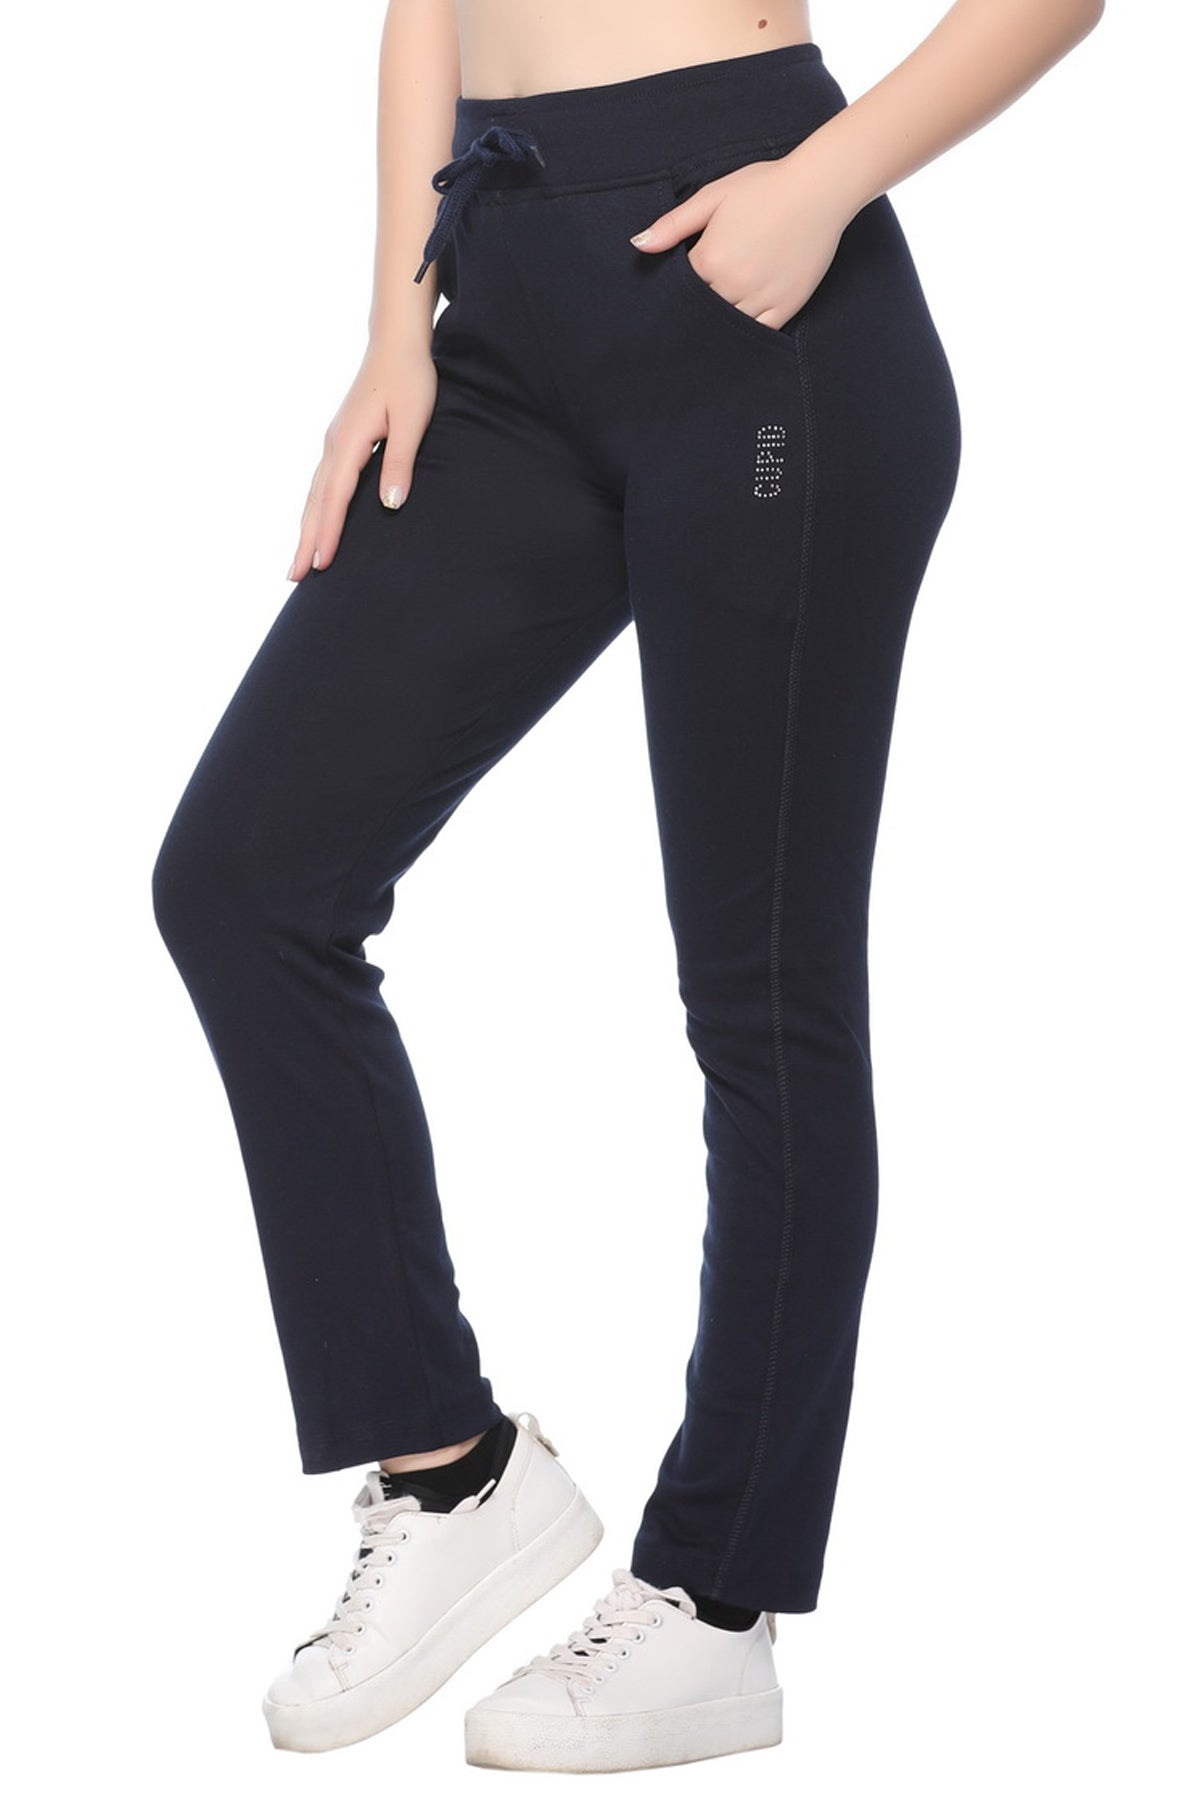 Lango Regular Fit Bottomwear  Buy Lango Regular Fit Bottomwear online in  India